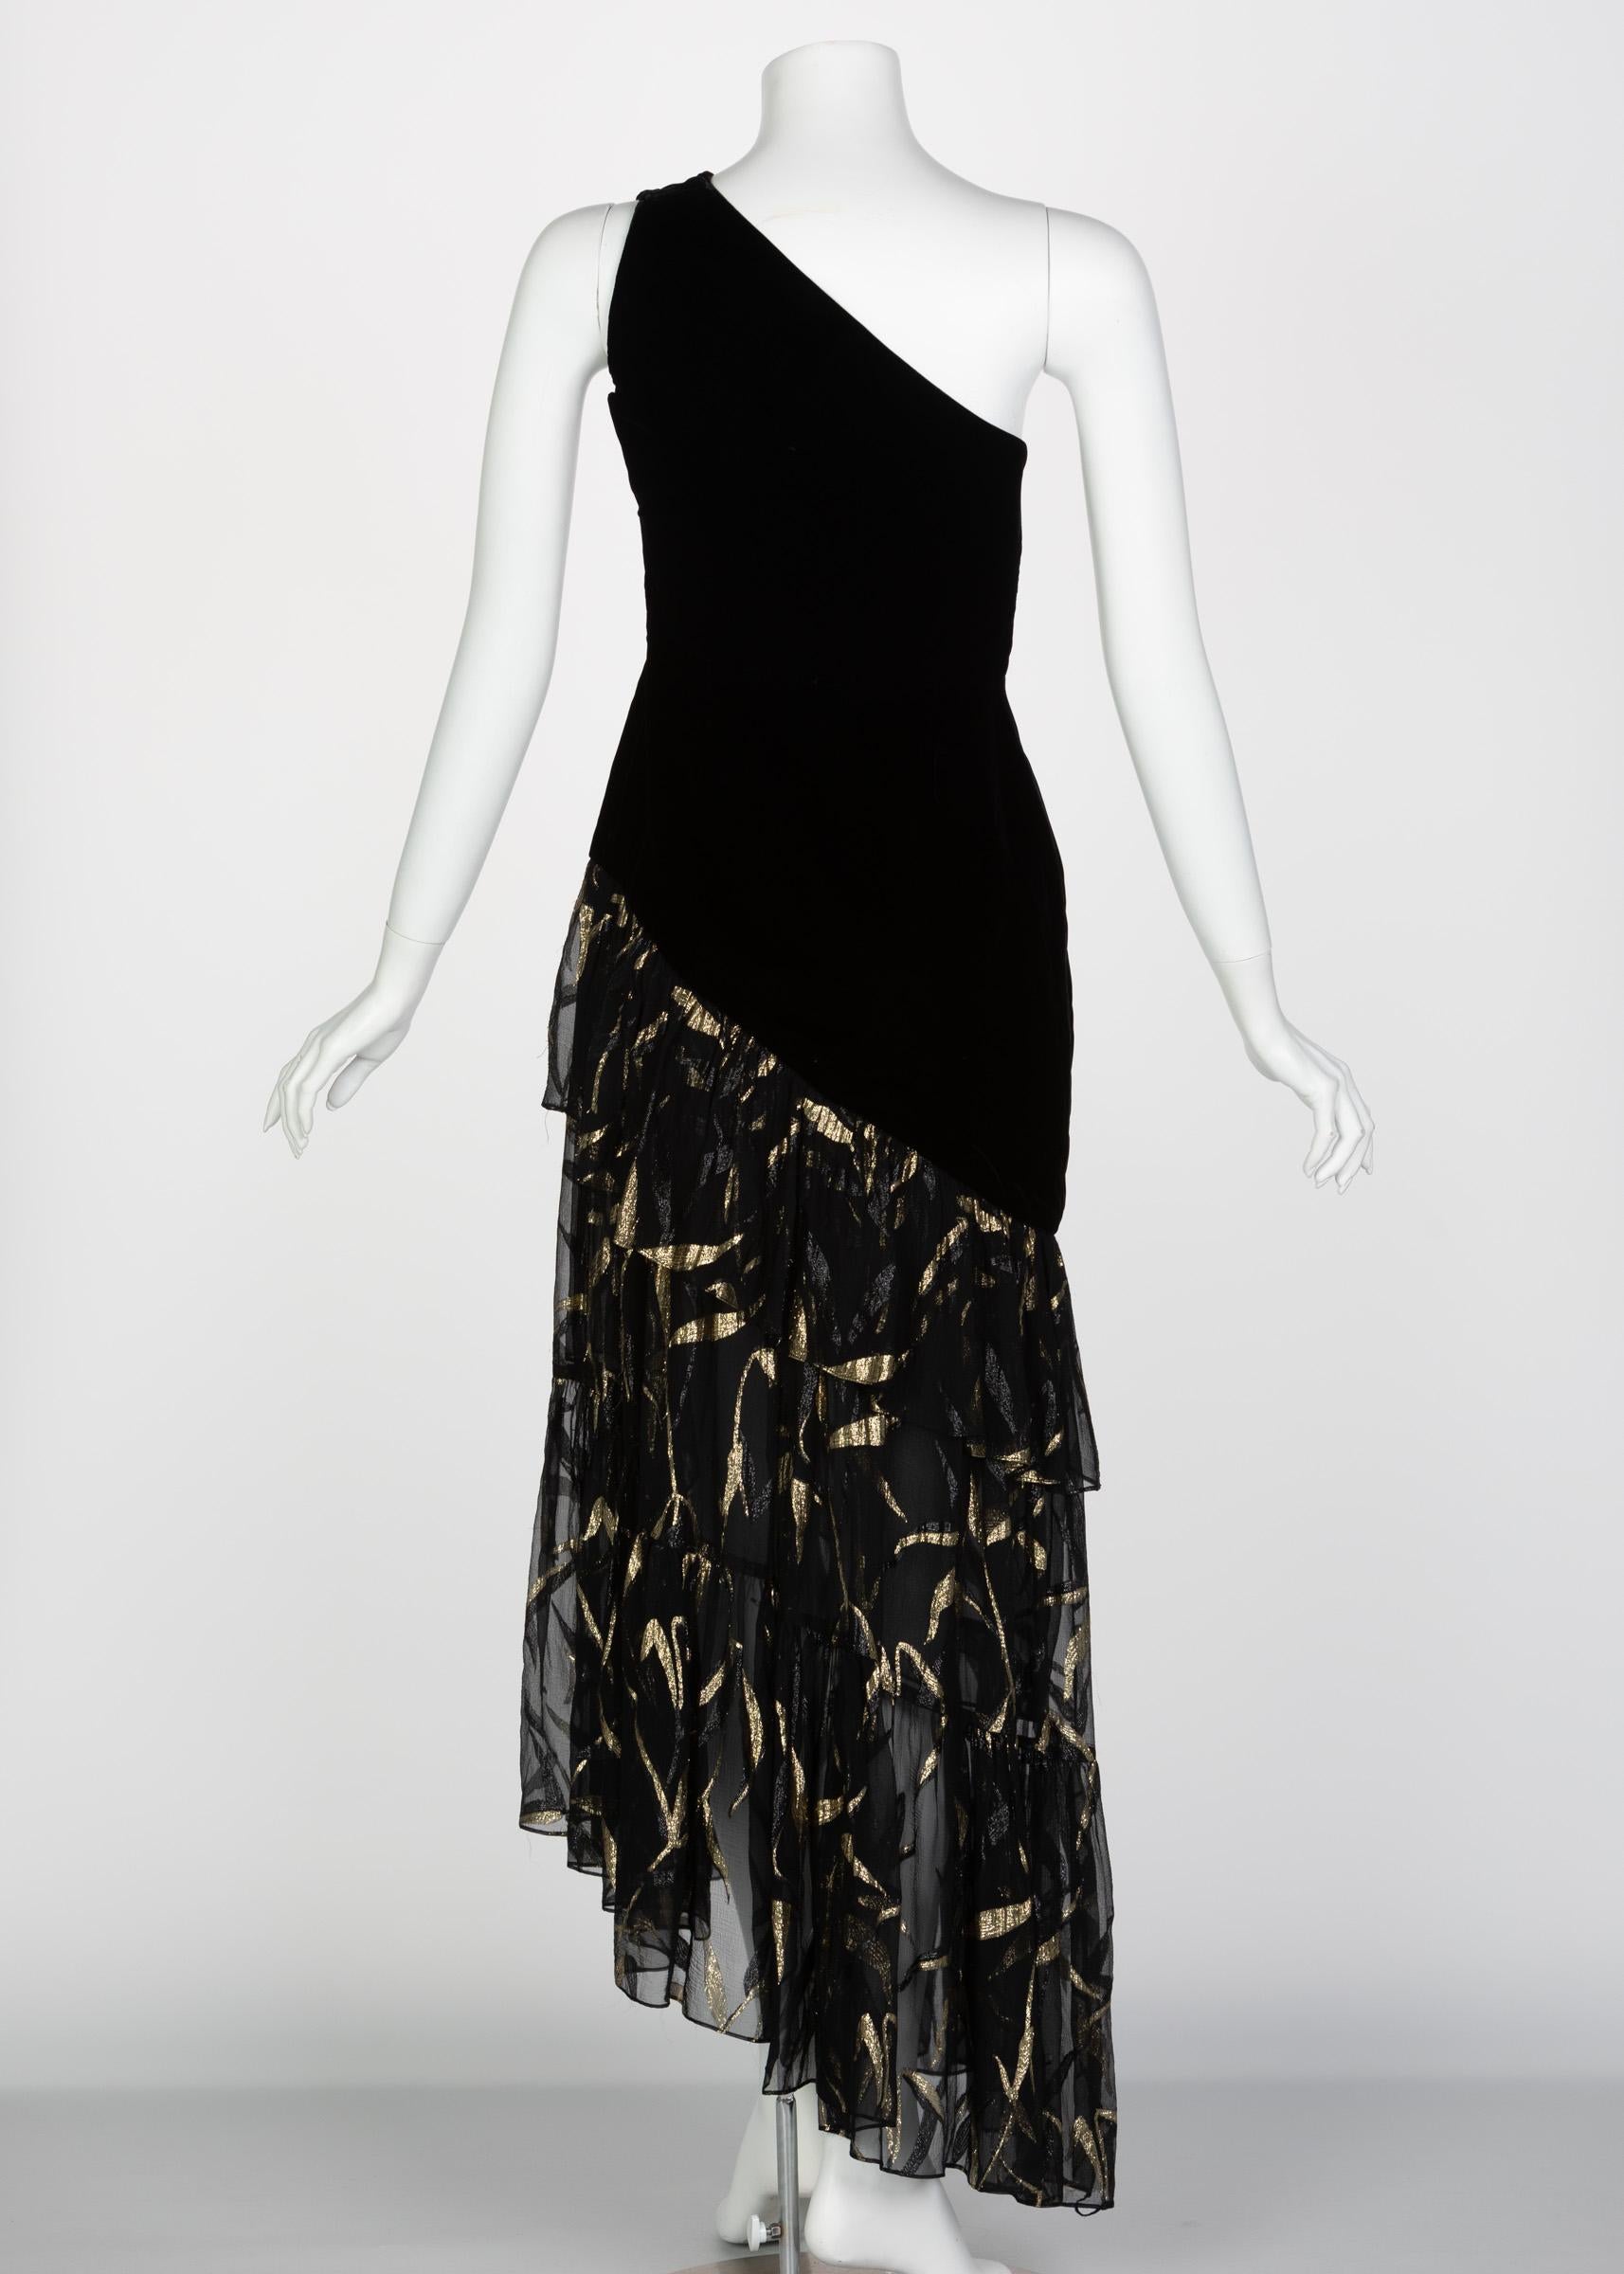 Saint Laurent YSL One shoulder Black Velvet Metallic Layered Dress, 1980s 1